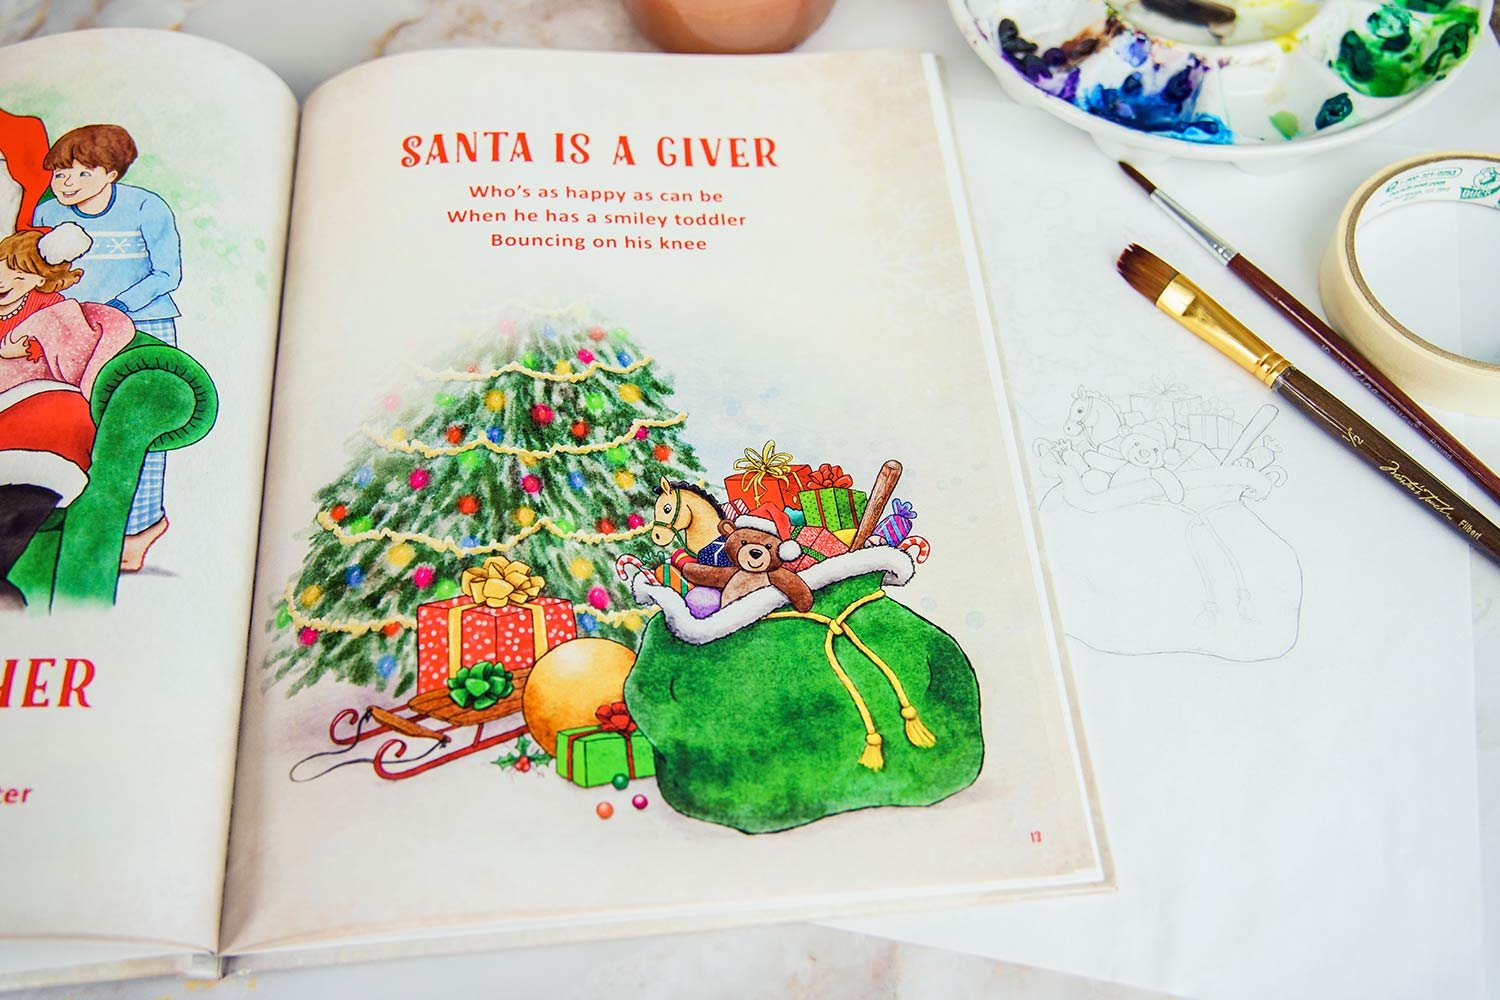 SantaIllustrationBookIllustration-HeidiRandallStudios-web2.jpg